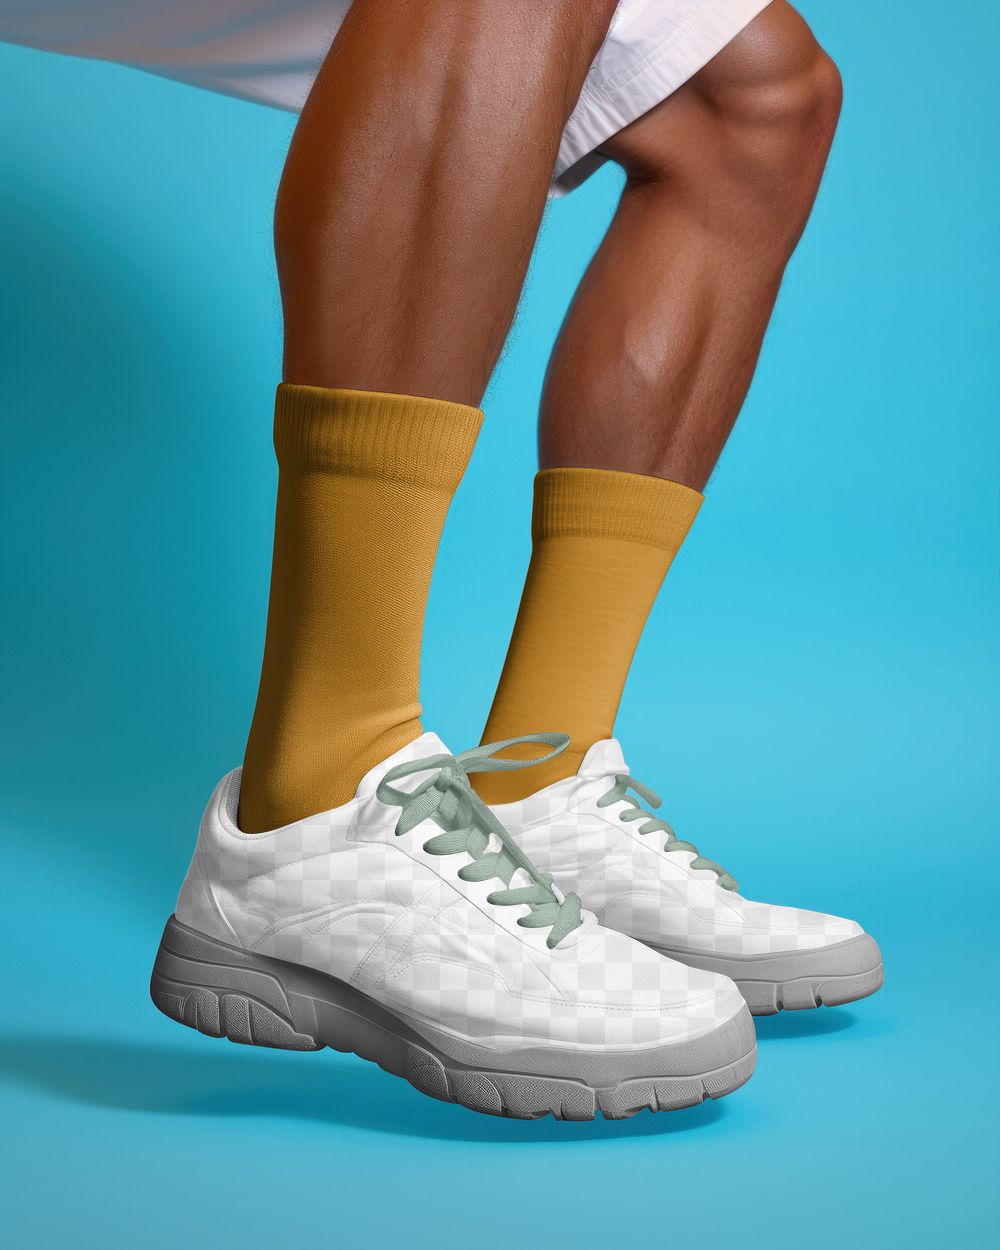 Men's sneakers png mockup, transparent design